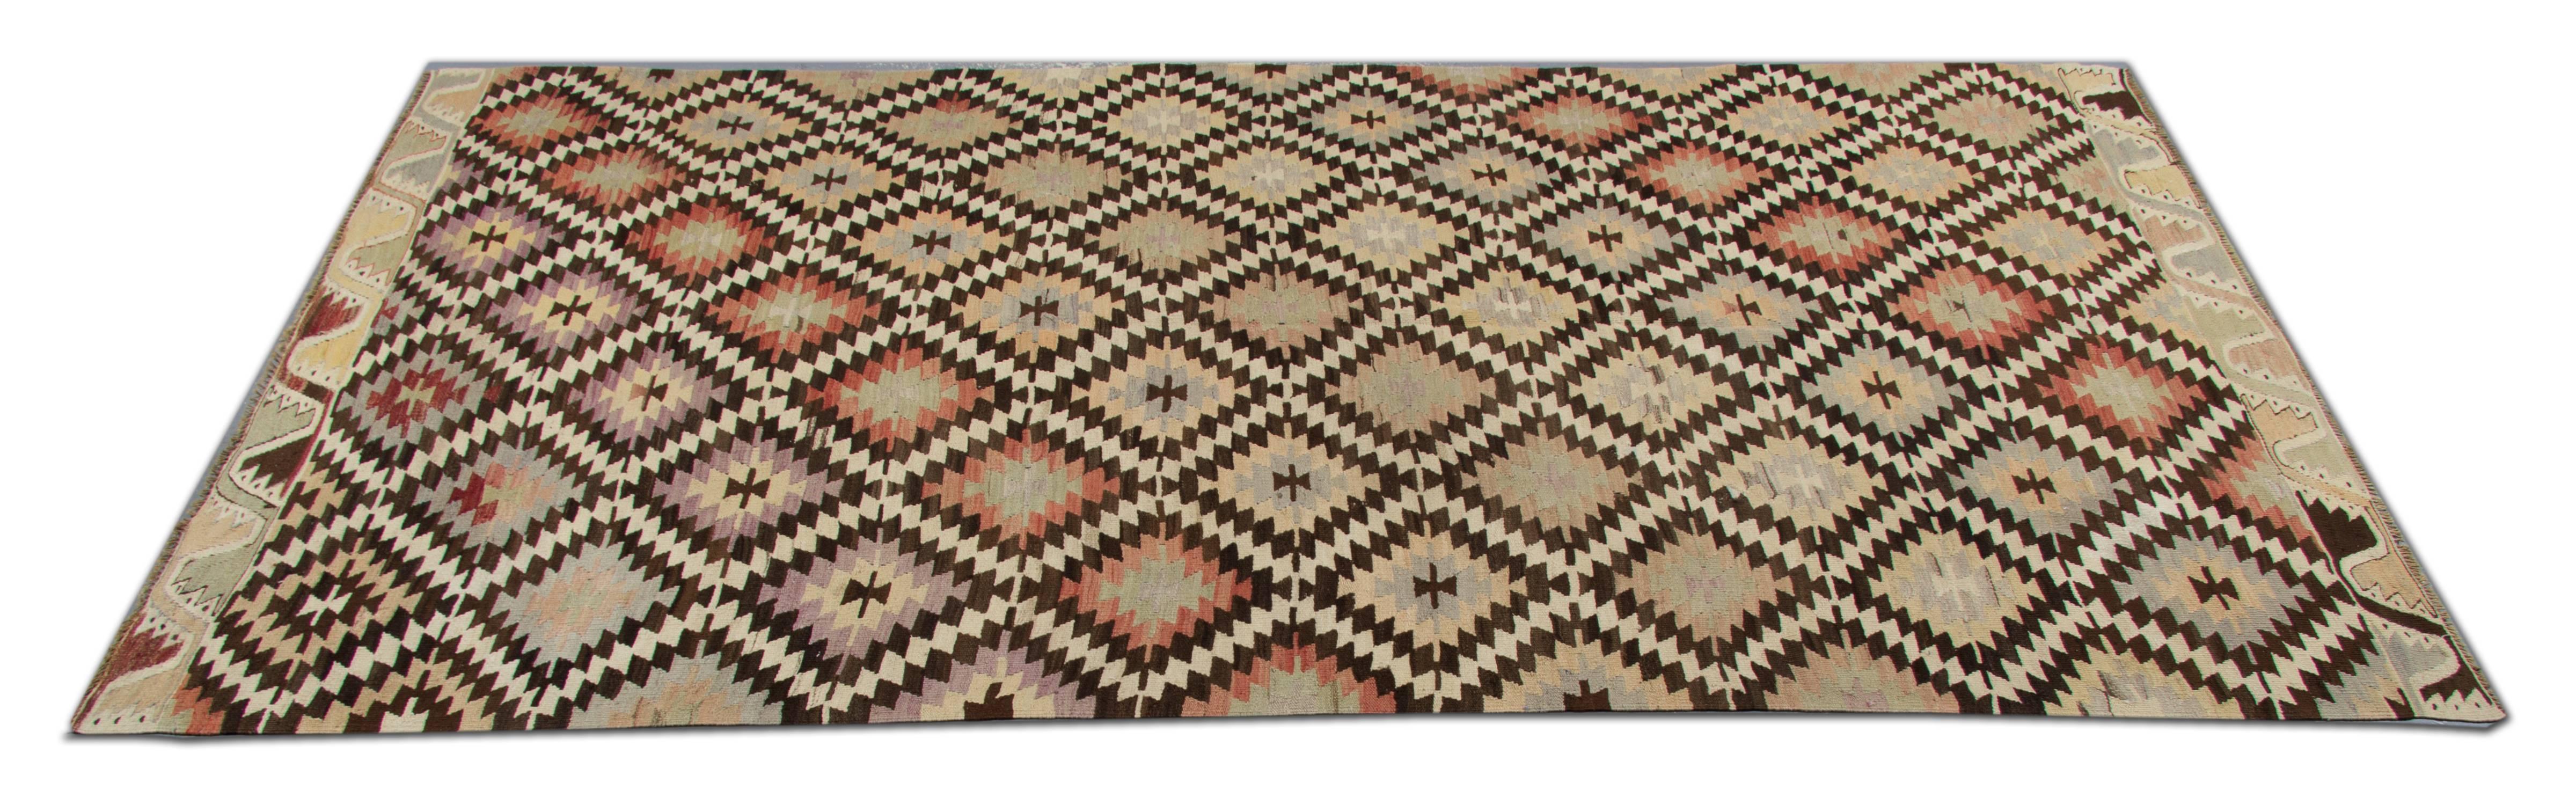 Dieser handgefertigte türkische Teppich ist ein antiker, traditioneller, handgewebter Teppich aus der Stadt Afyon, der von der Welt des konventionellen Teppichdesigns beeinflusst ist. Diese Art von Teppich eignet sich als Eingangs- und Flurteppich,